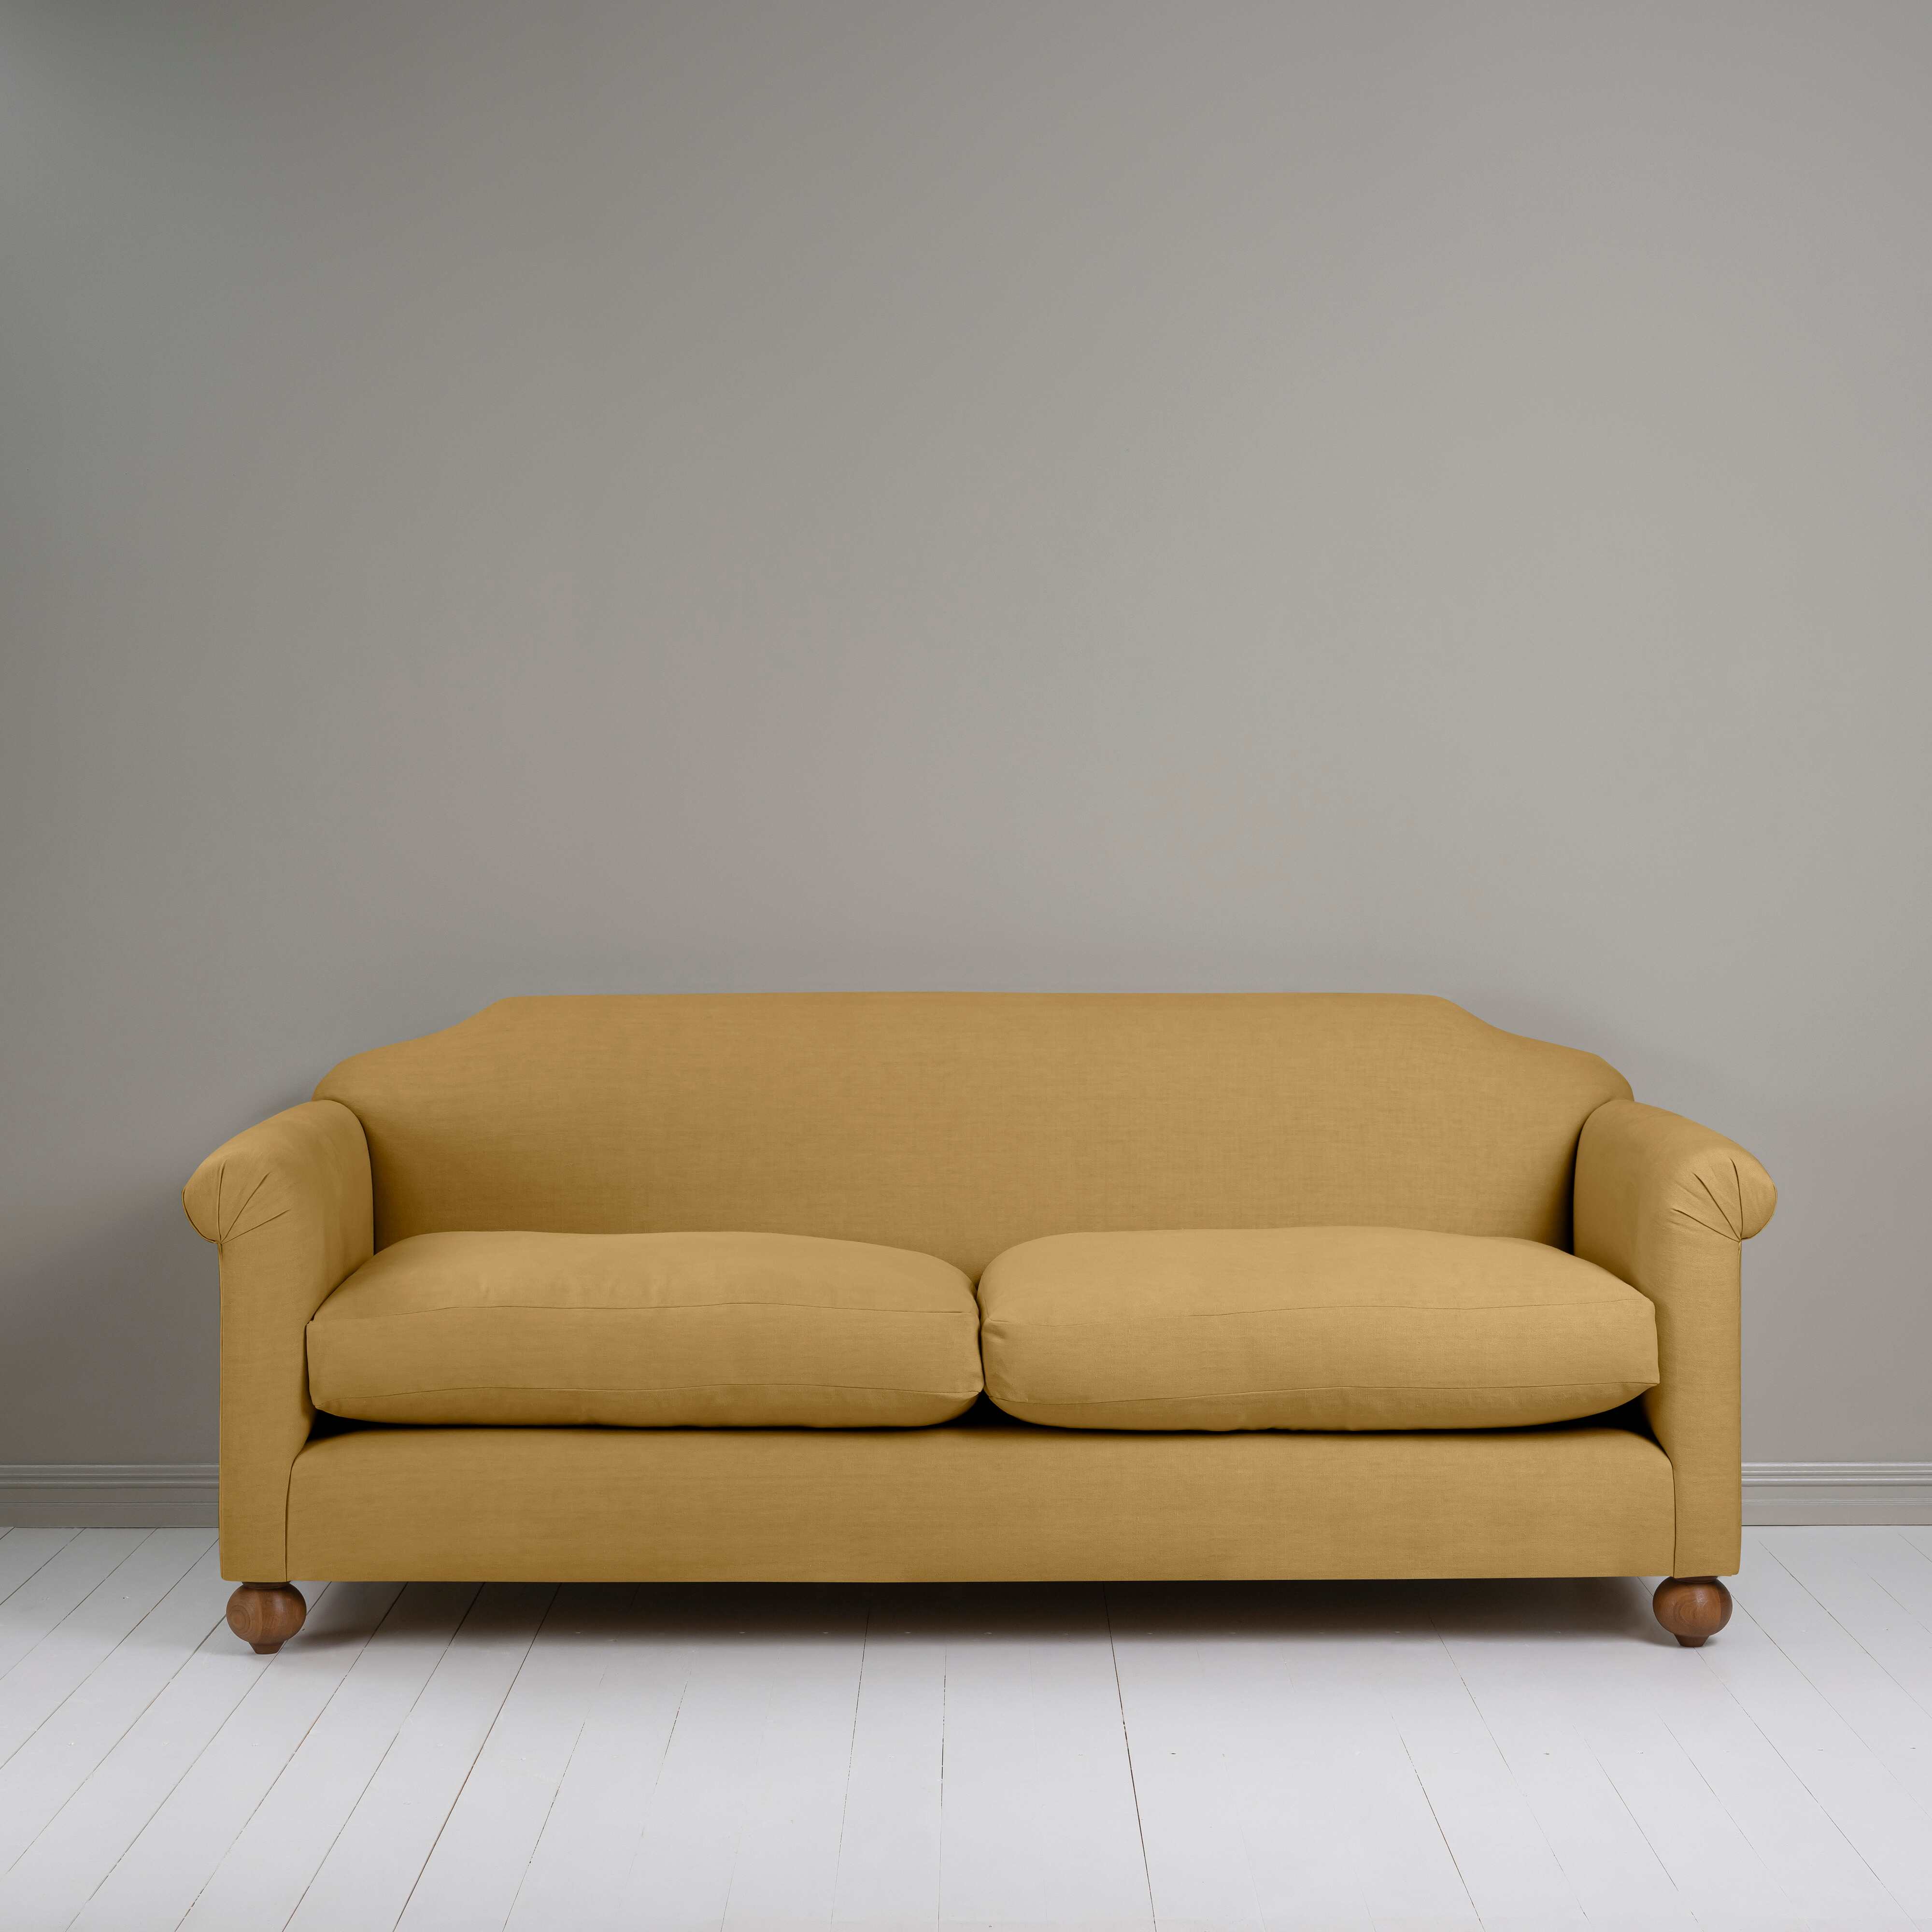  Dolittle 4 seater Sofa in Laidback Linen Ochre 